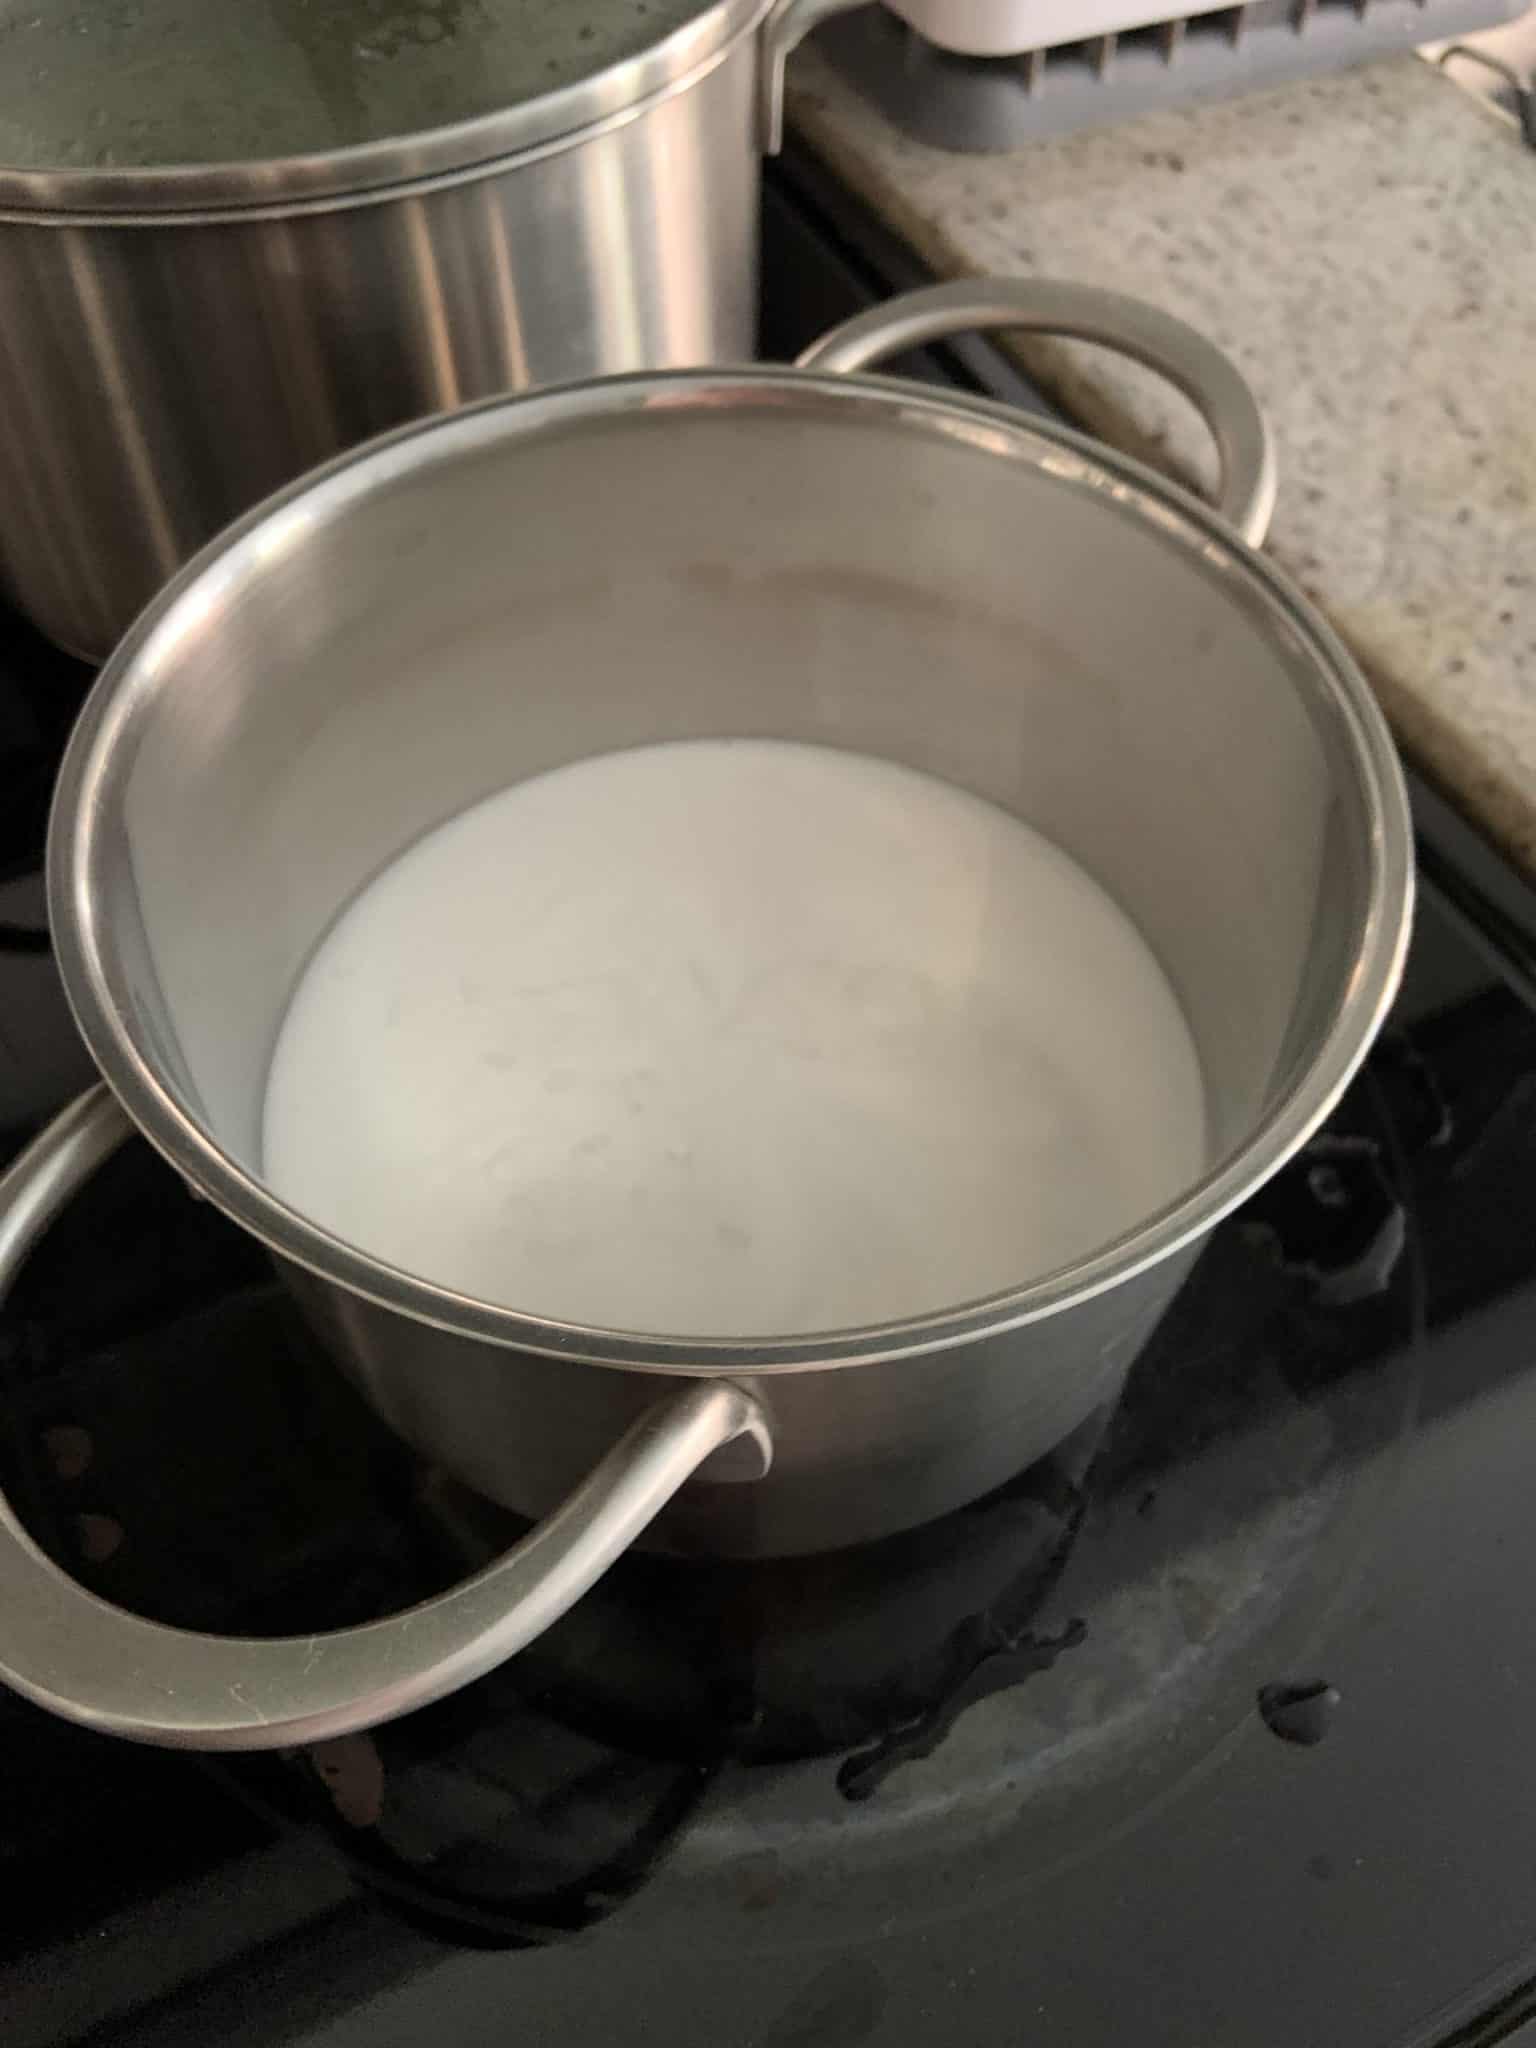 boil coconut liquid